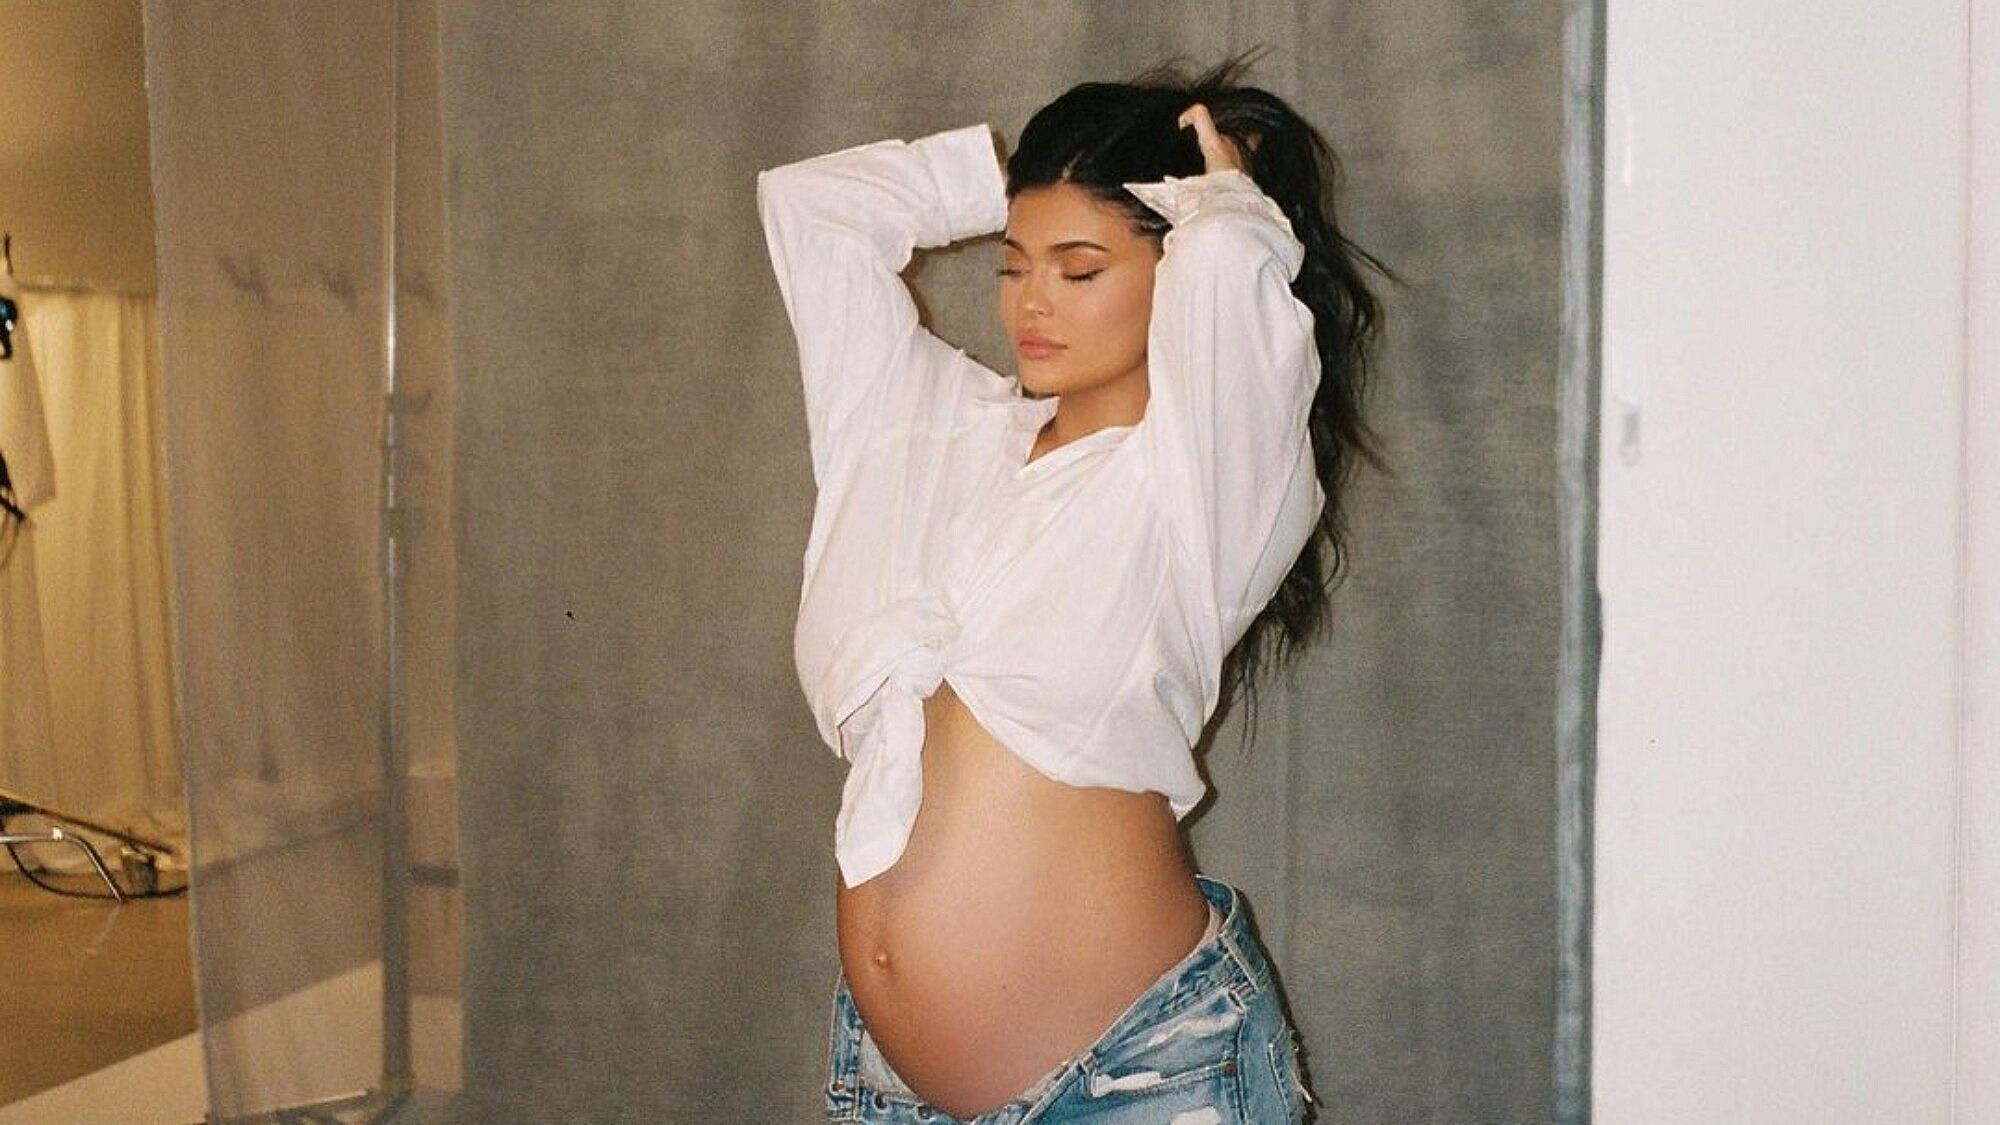 קיילי ג'נר בהיריון | צילום: מתוך האינסטגרם של  kyliejenner@